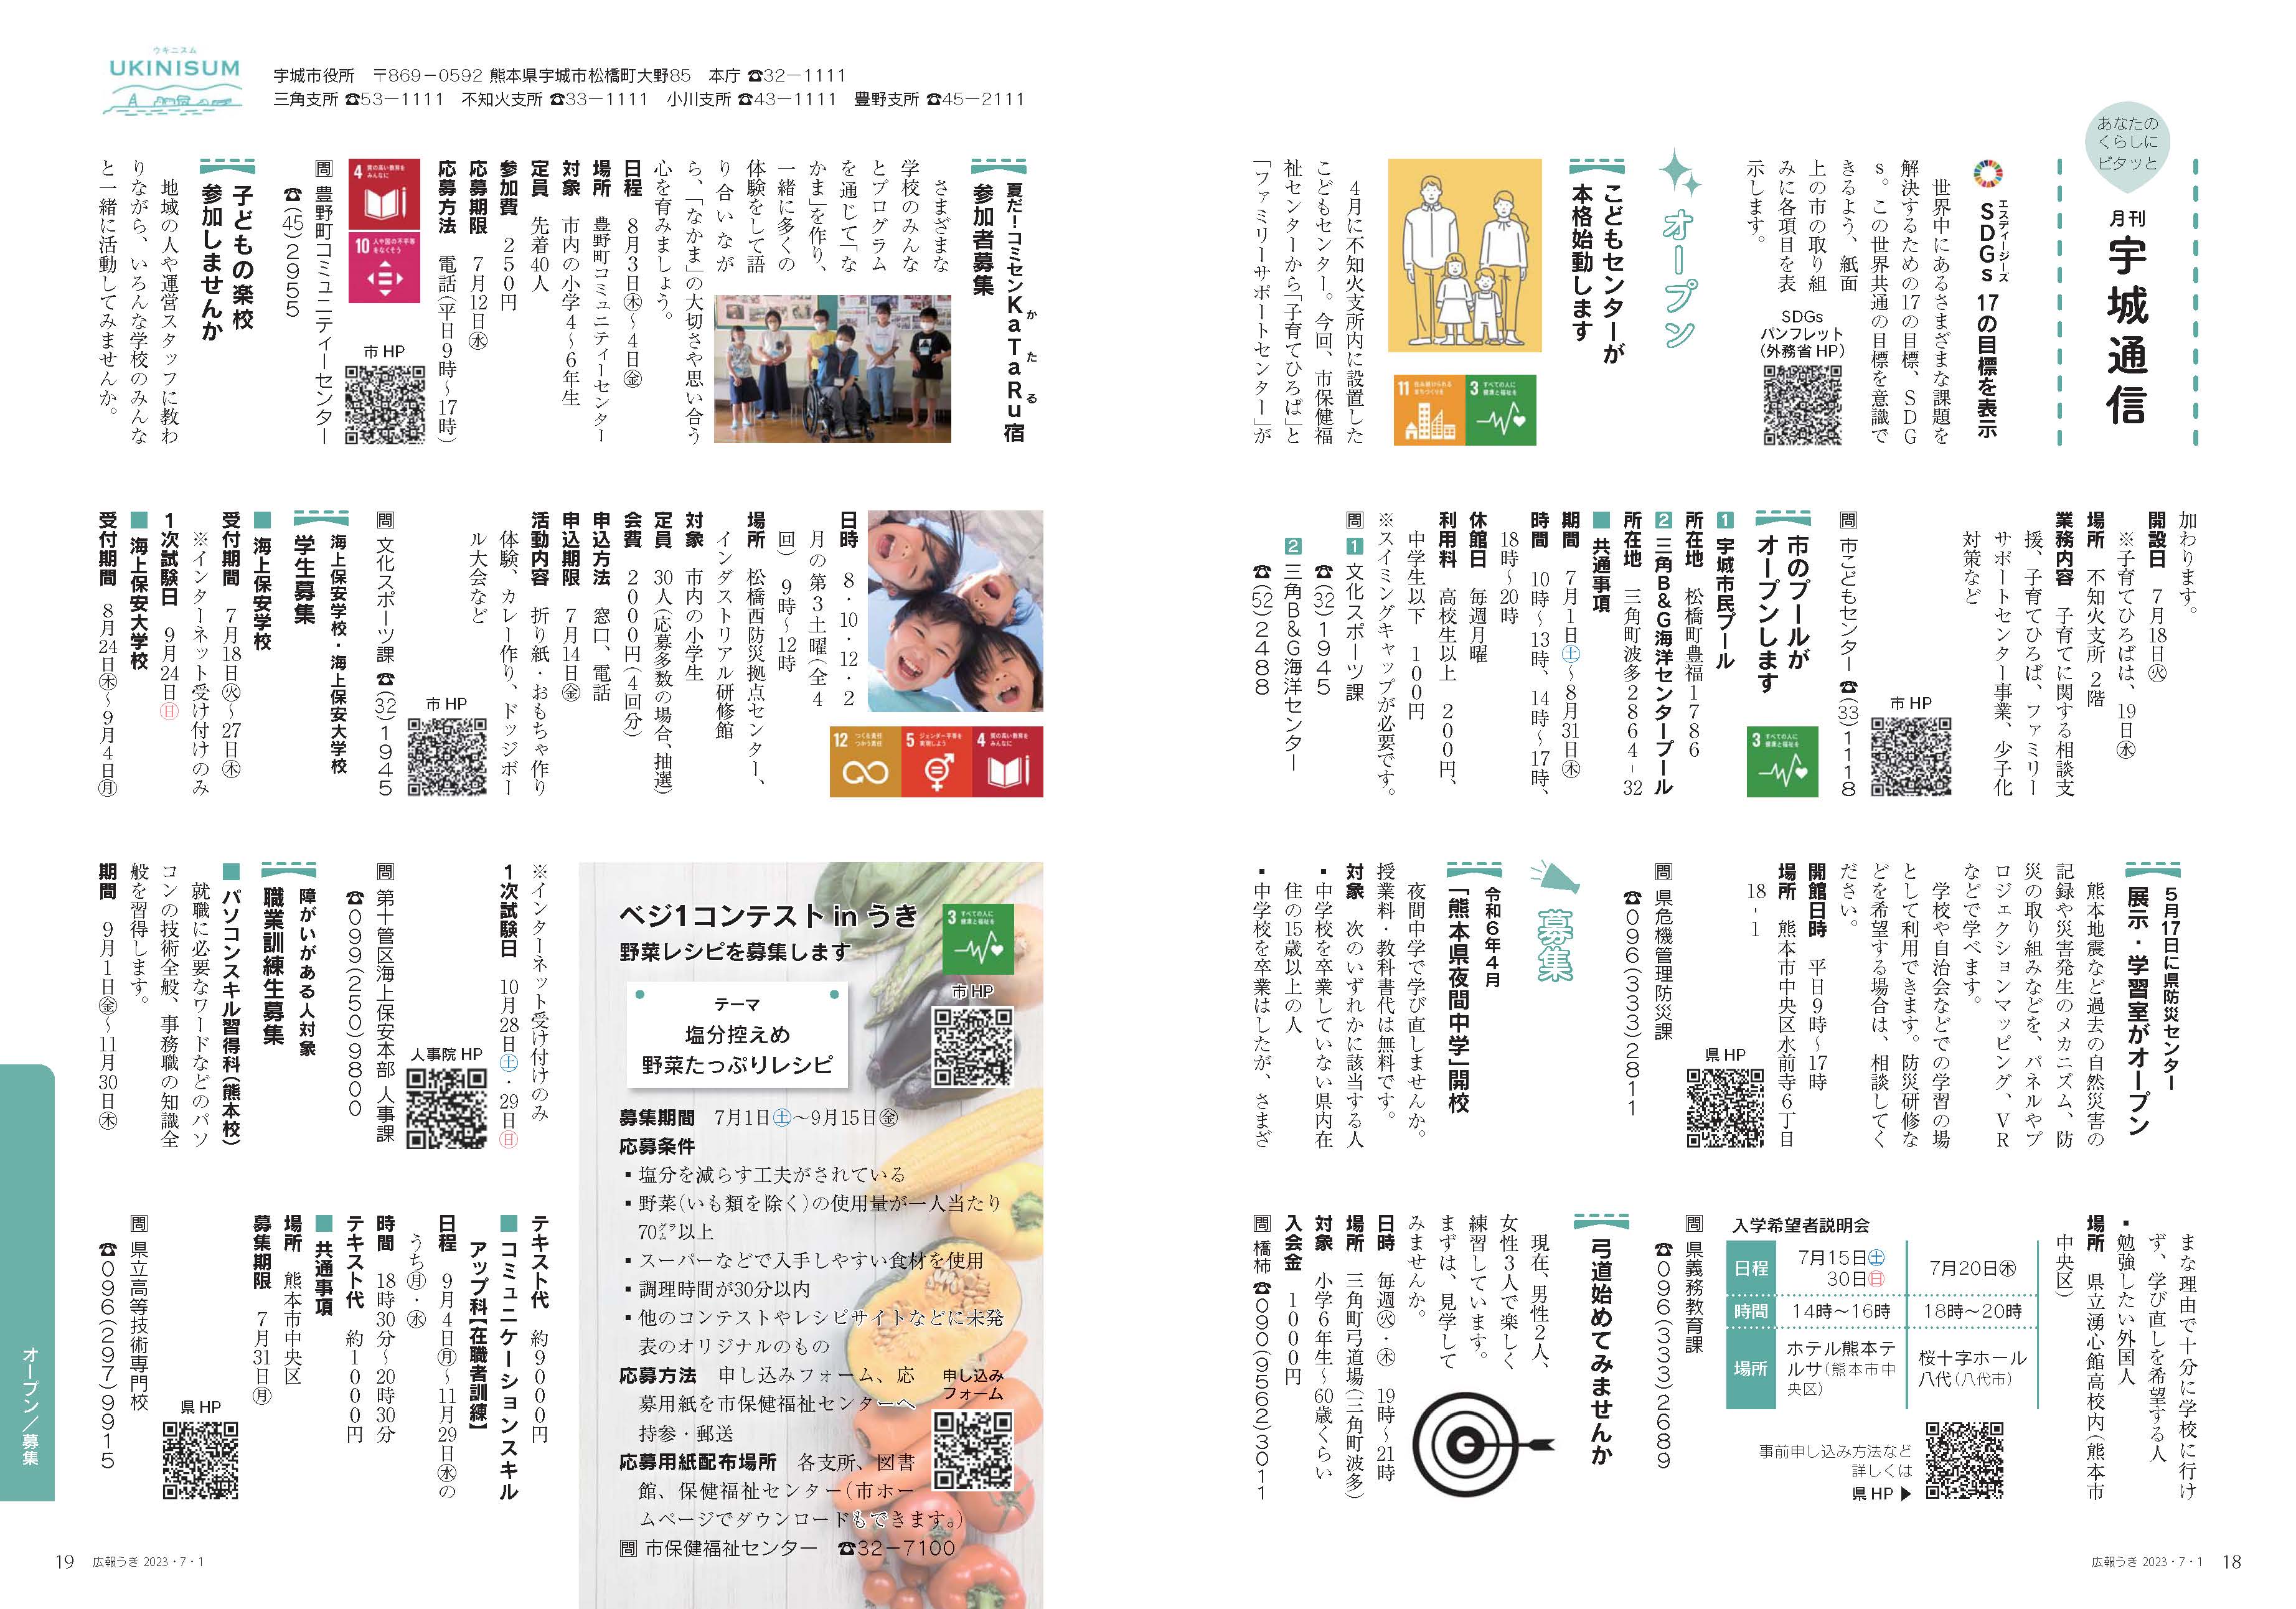 P18、P19  あなたのくらしにピタッと  月刊 宇城通信のページ画像、詳細はPDFファイルを参照ください。